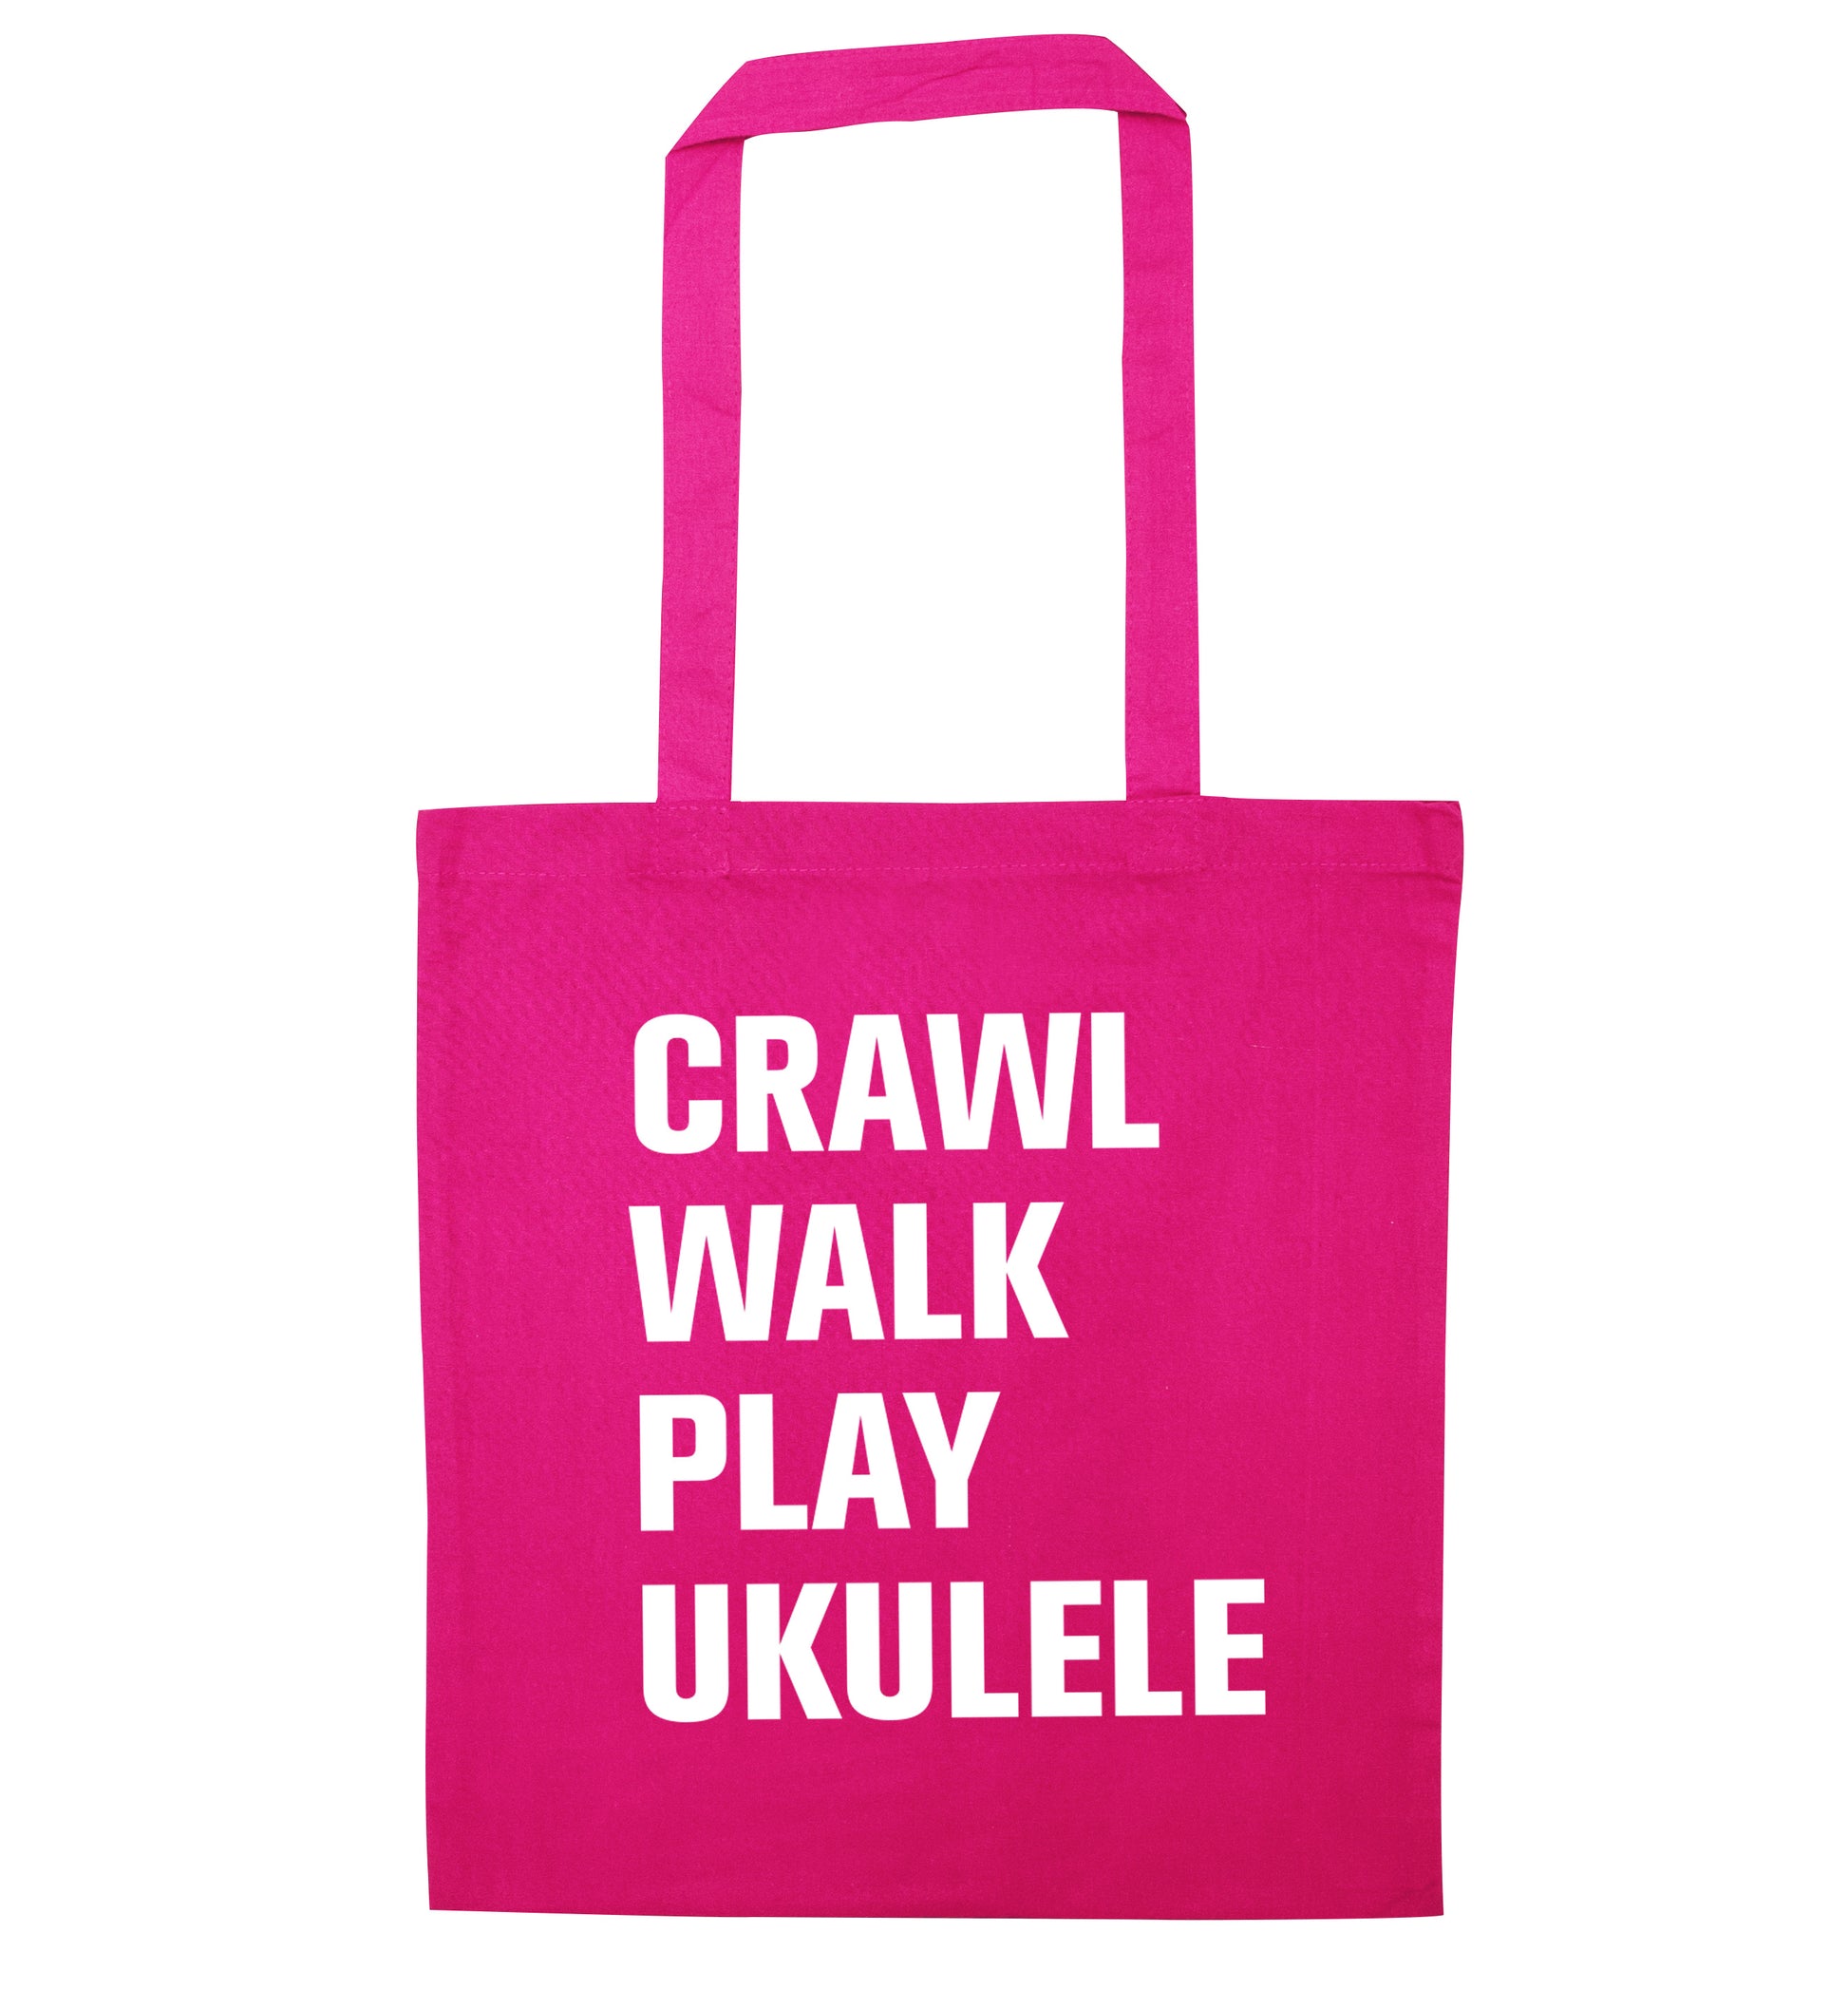 Crawl walk play ukulele pink tote bag